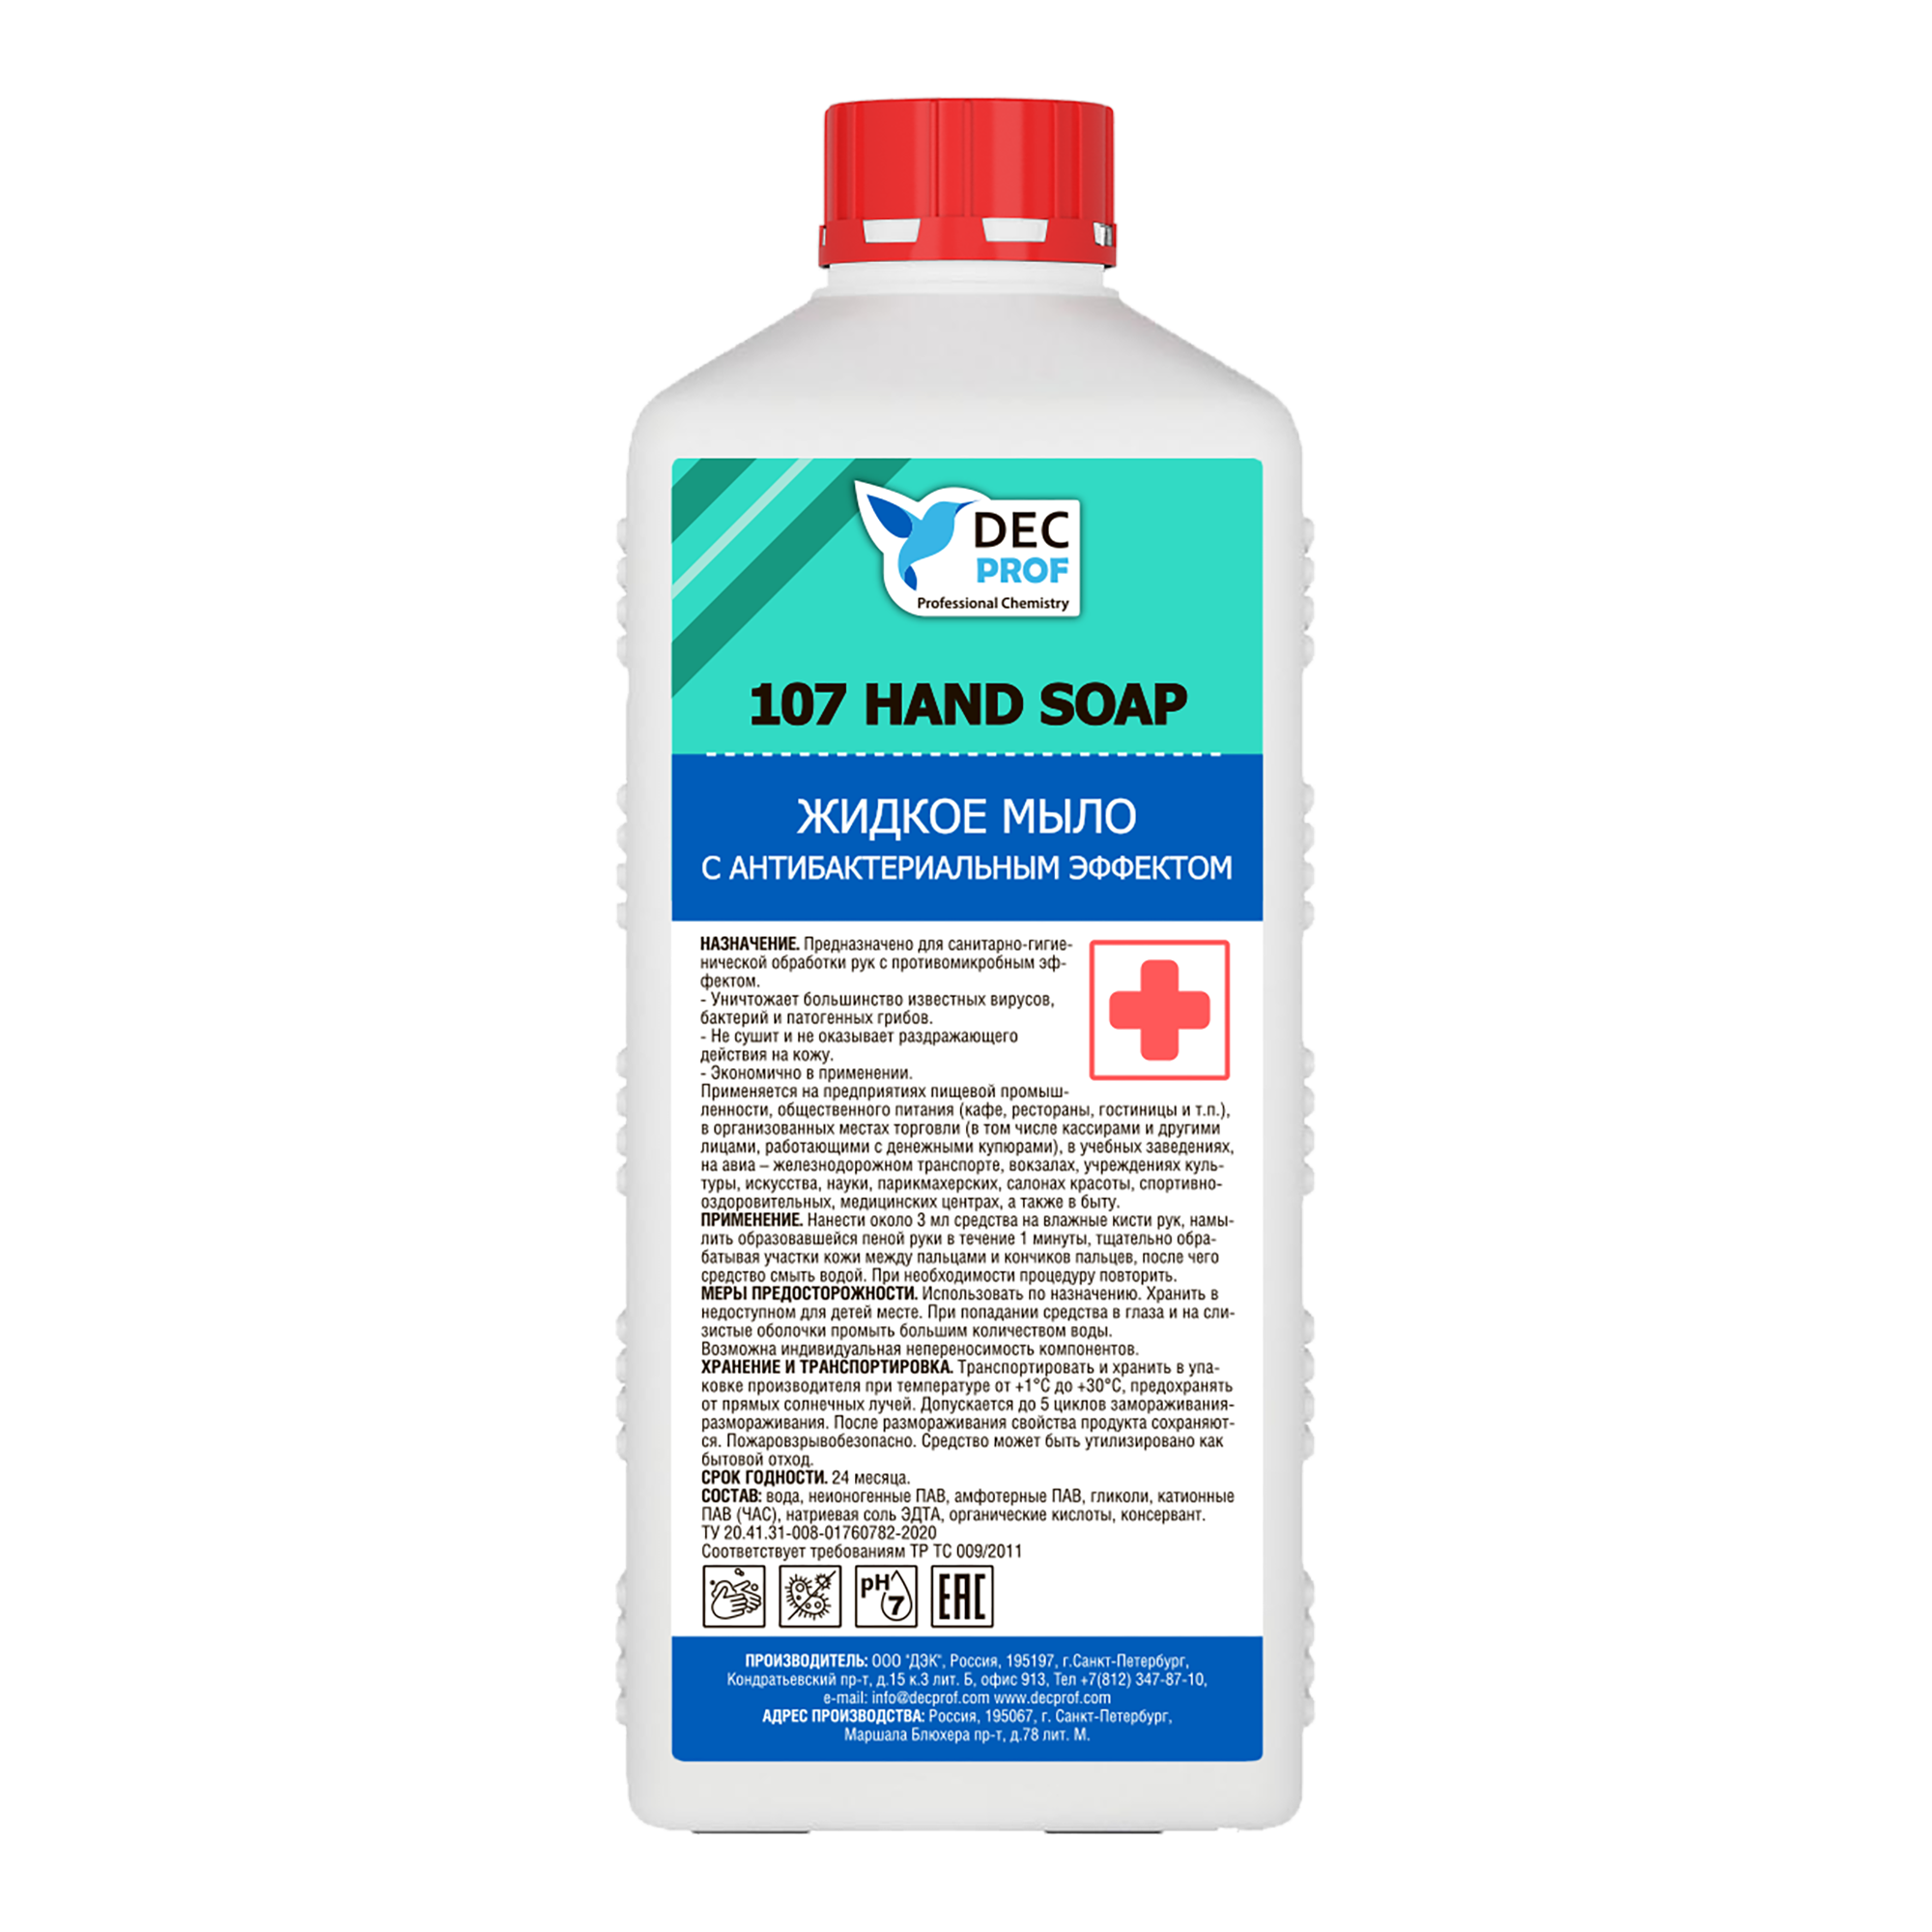 107-1 Жидкое мыло с антибактериальным эффектом на основе ЧАС Dec Prof 107 HAND SOAP - 1 л